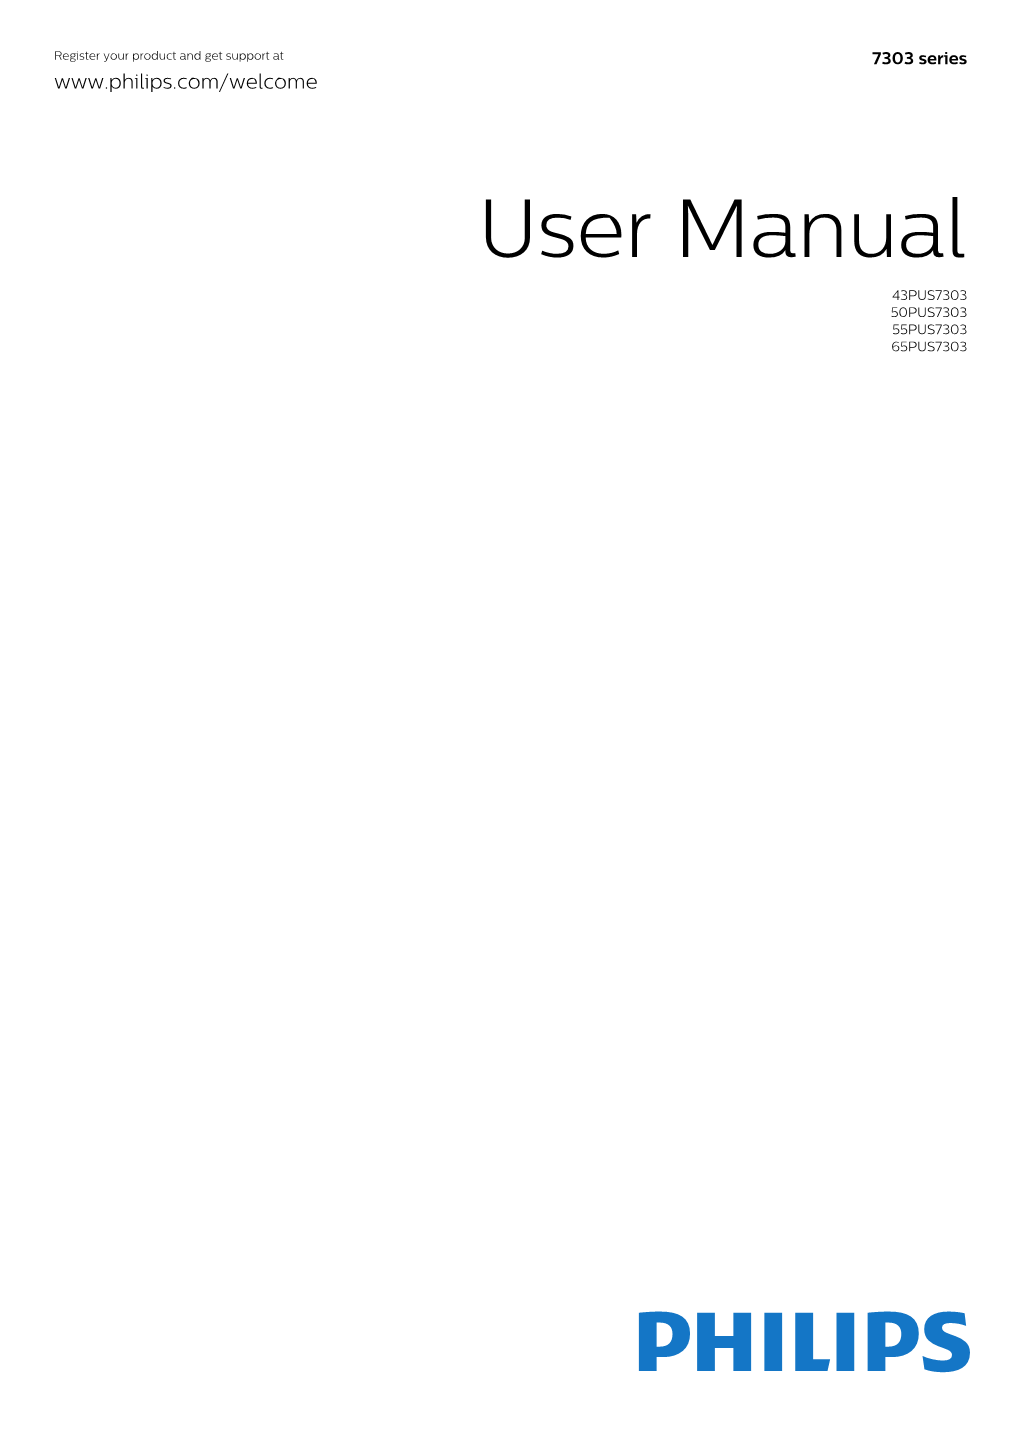 User Manual 43PUS7303 50PUS7303 55PUS7303 65PUS7303 Contents